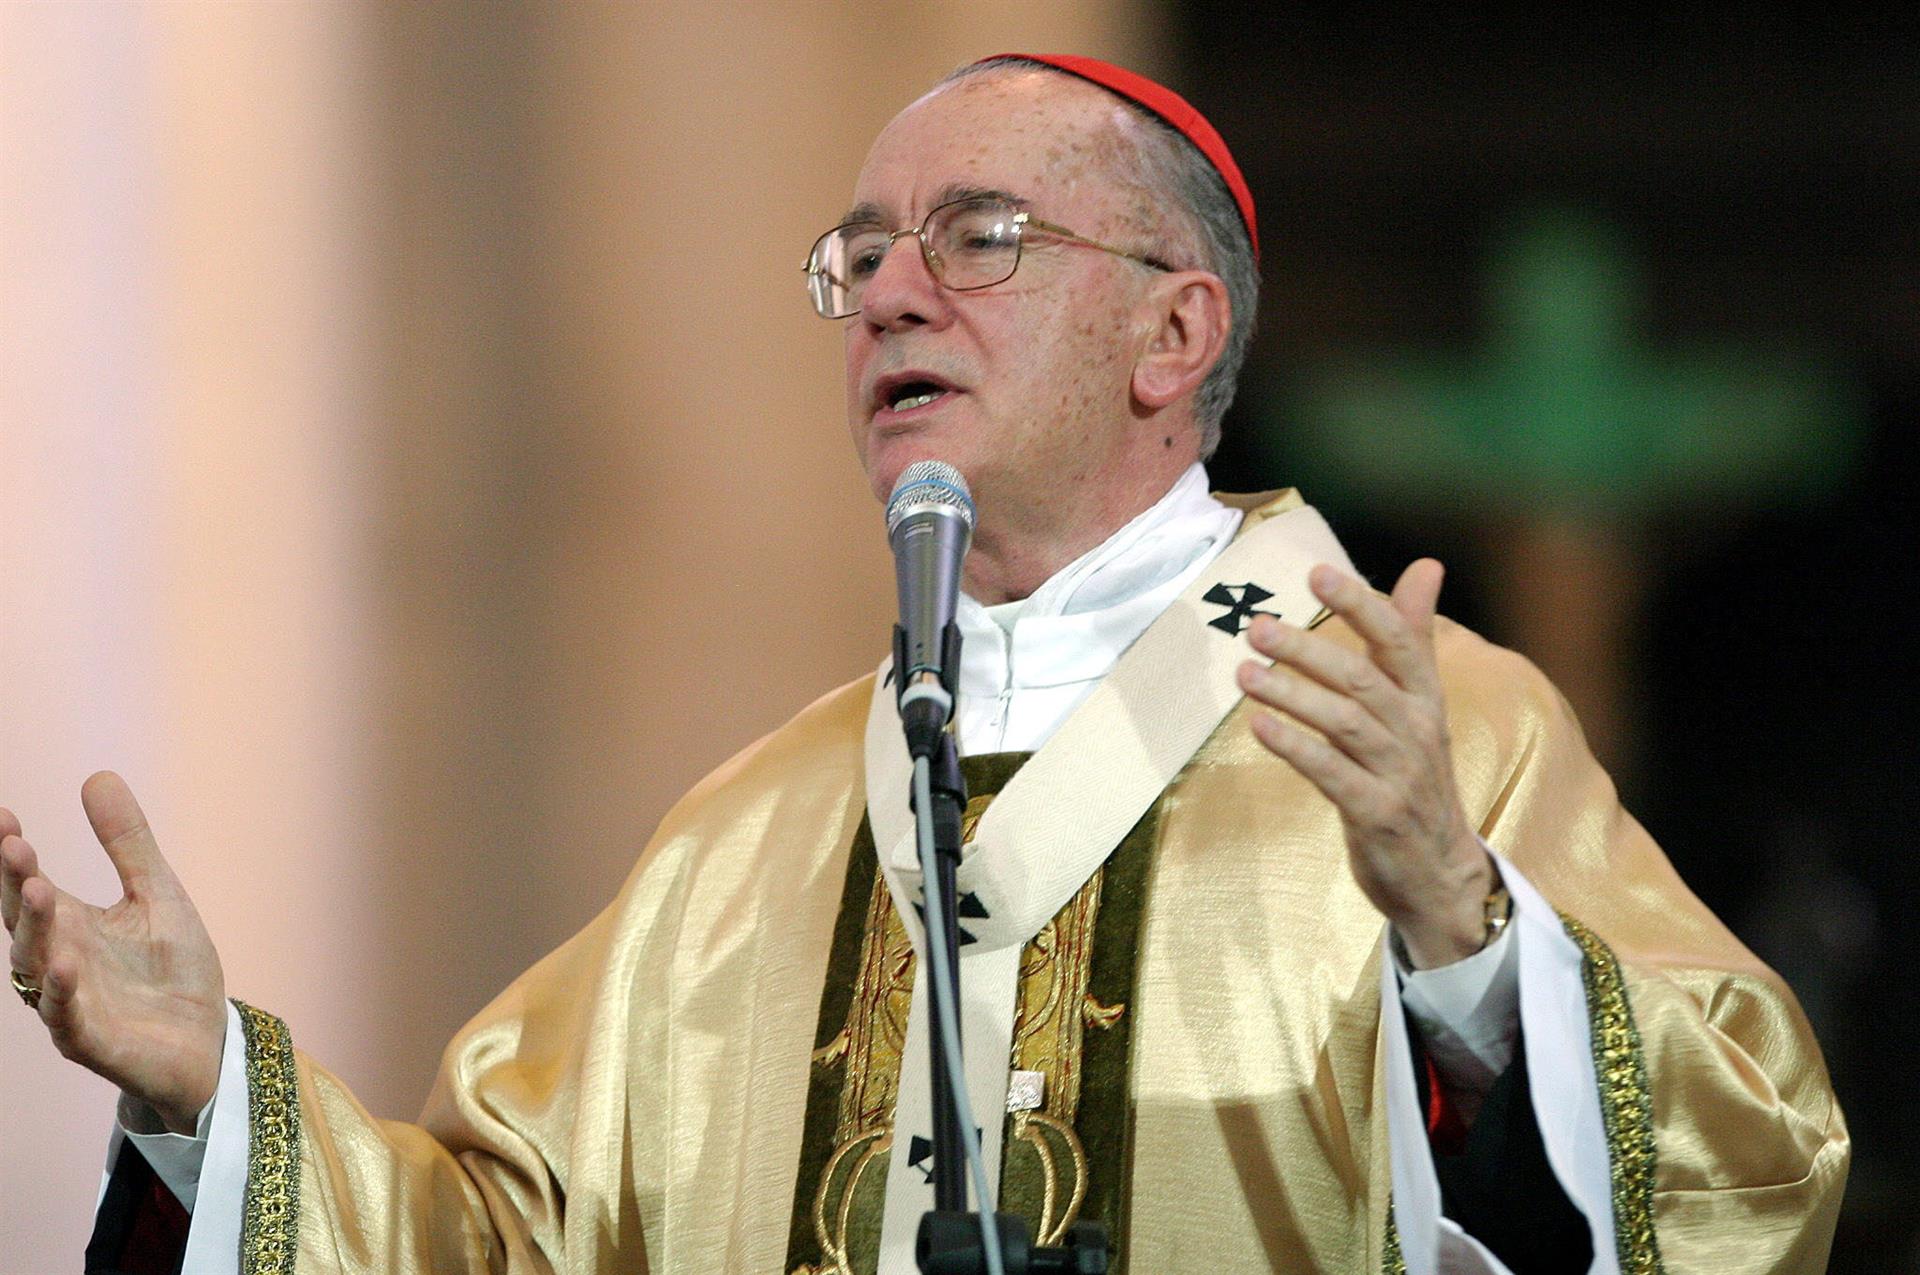 El papa Francisco lamenta la muerte del cardenal Hummes, que fue quien inspiró su nombre papal